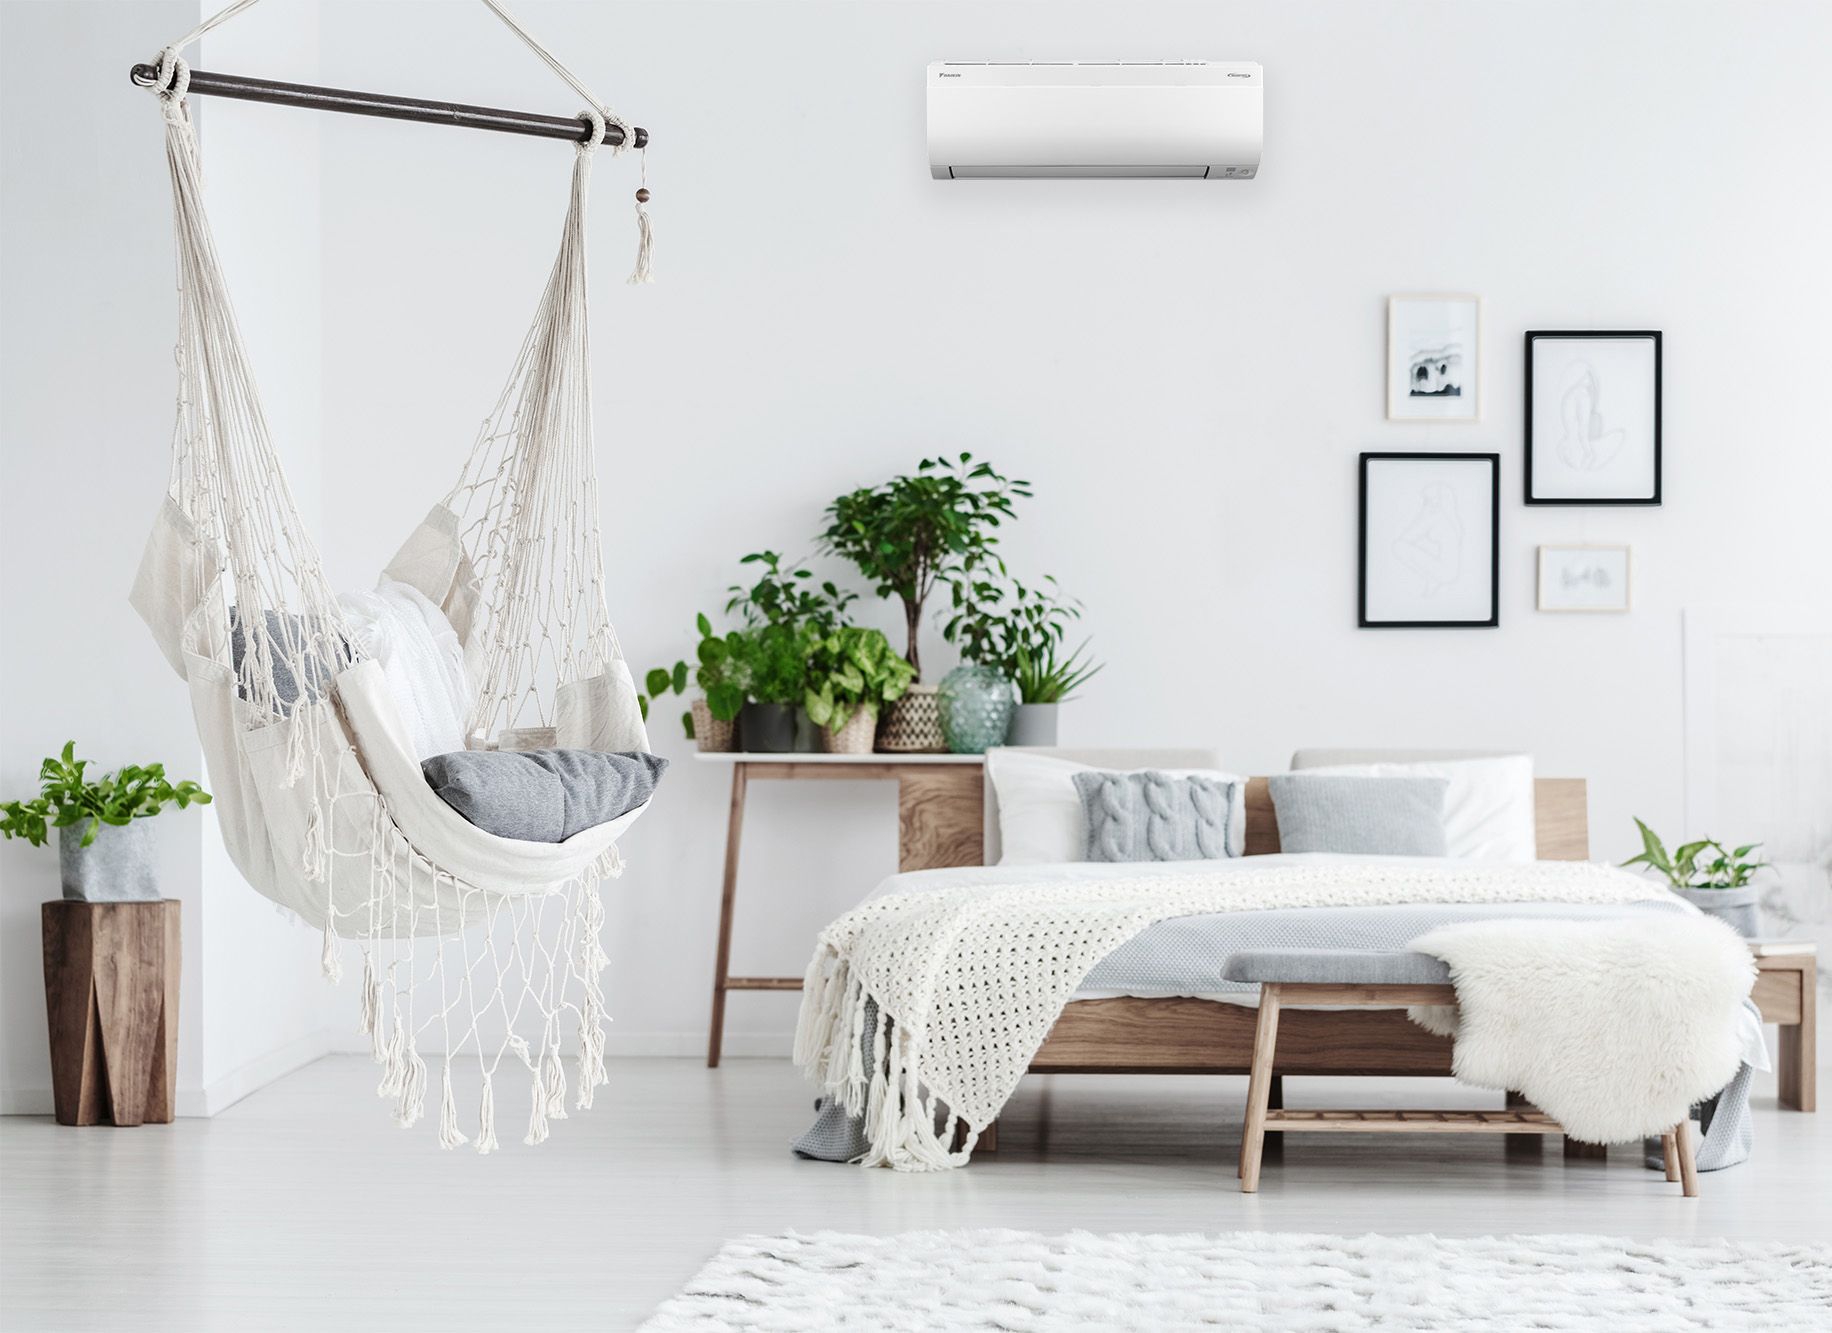 Daikin Cora heat pump in bedroom for cooling